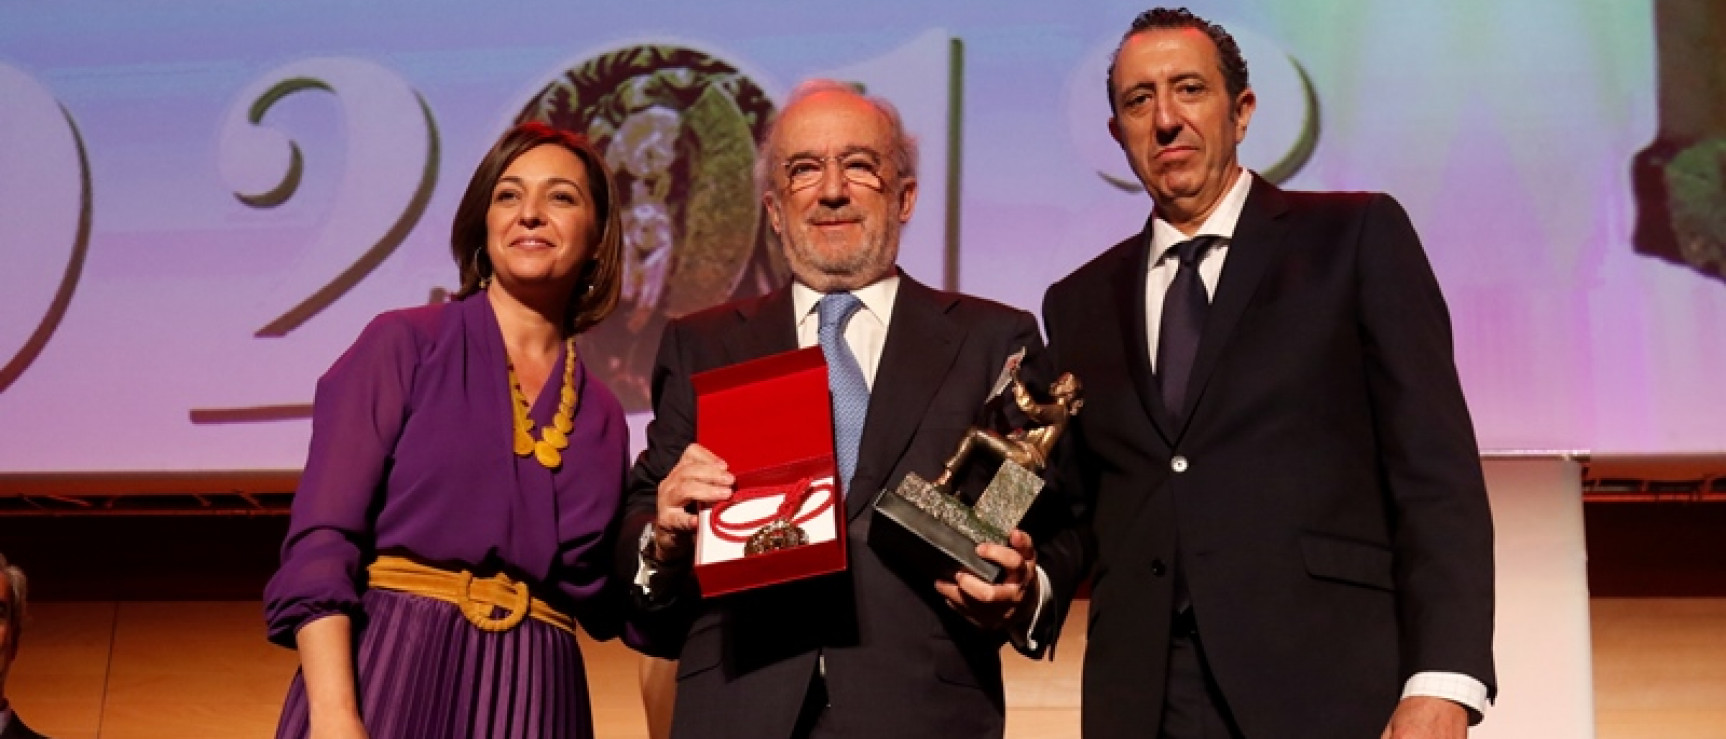 Muñoz Machado recibe el premio Cordobés del Año de manos de Isabel Ambrosio y Enrique Simarro. Foto: AJ/ Diario Córdoba.